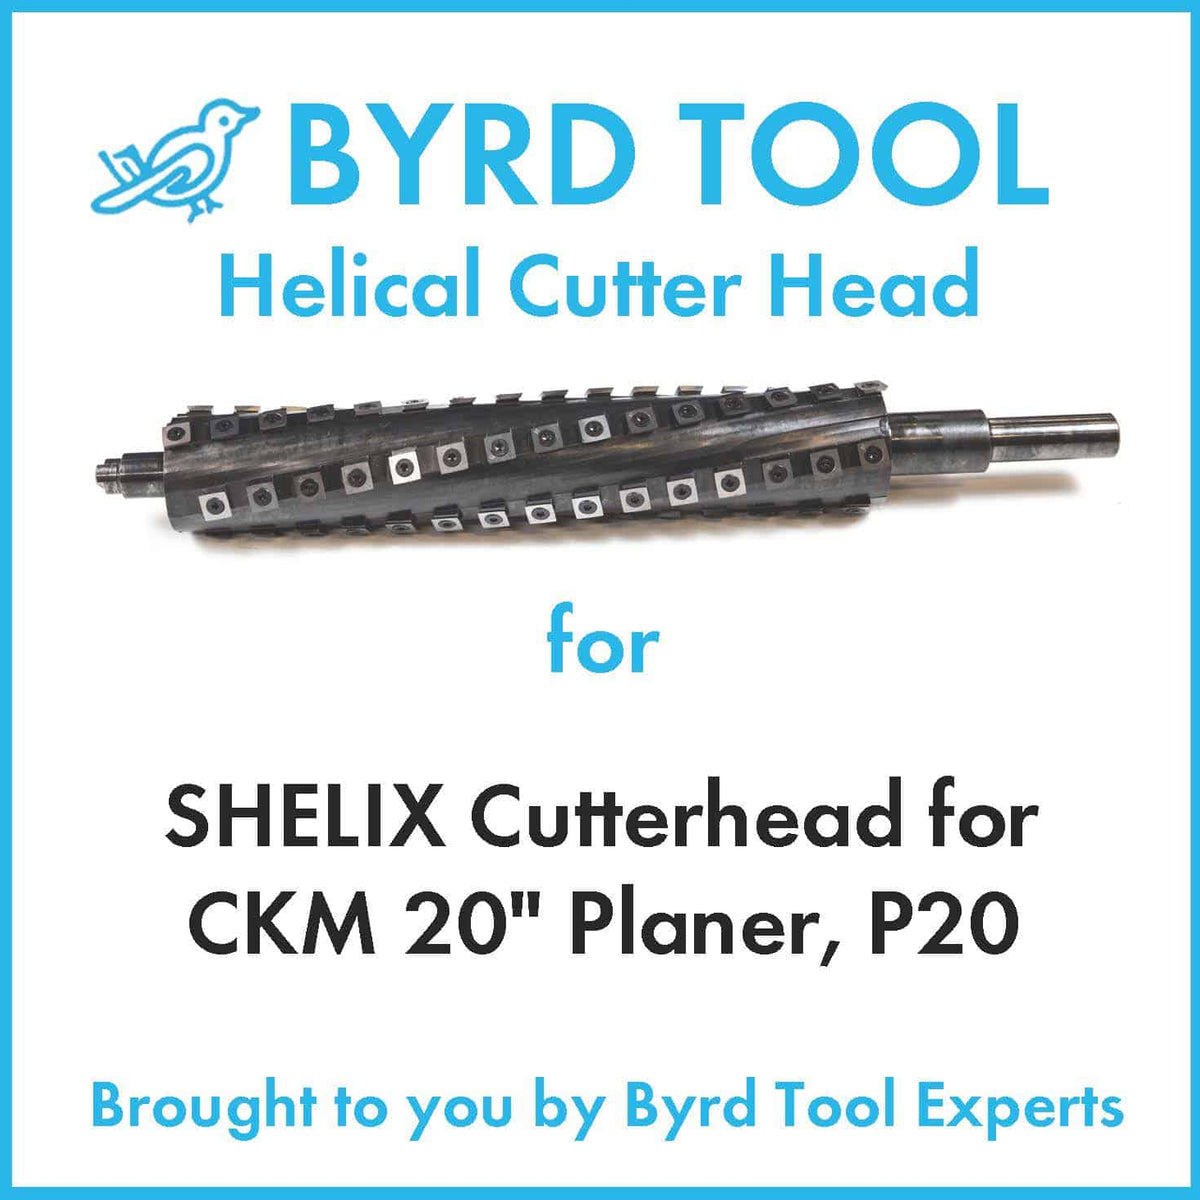 SHELIX Cutterhead for CKM 20" Planer